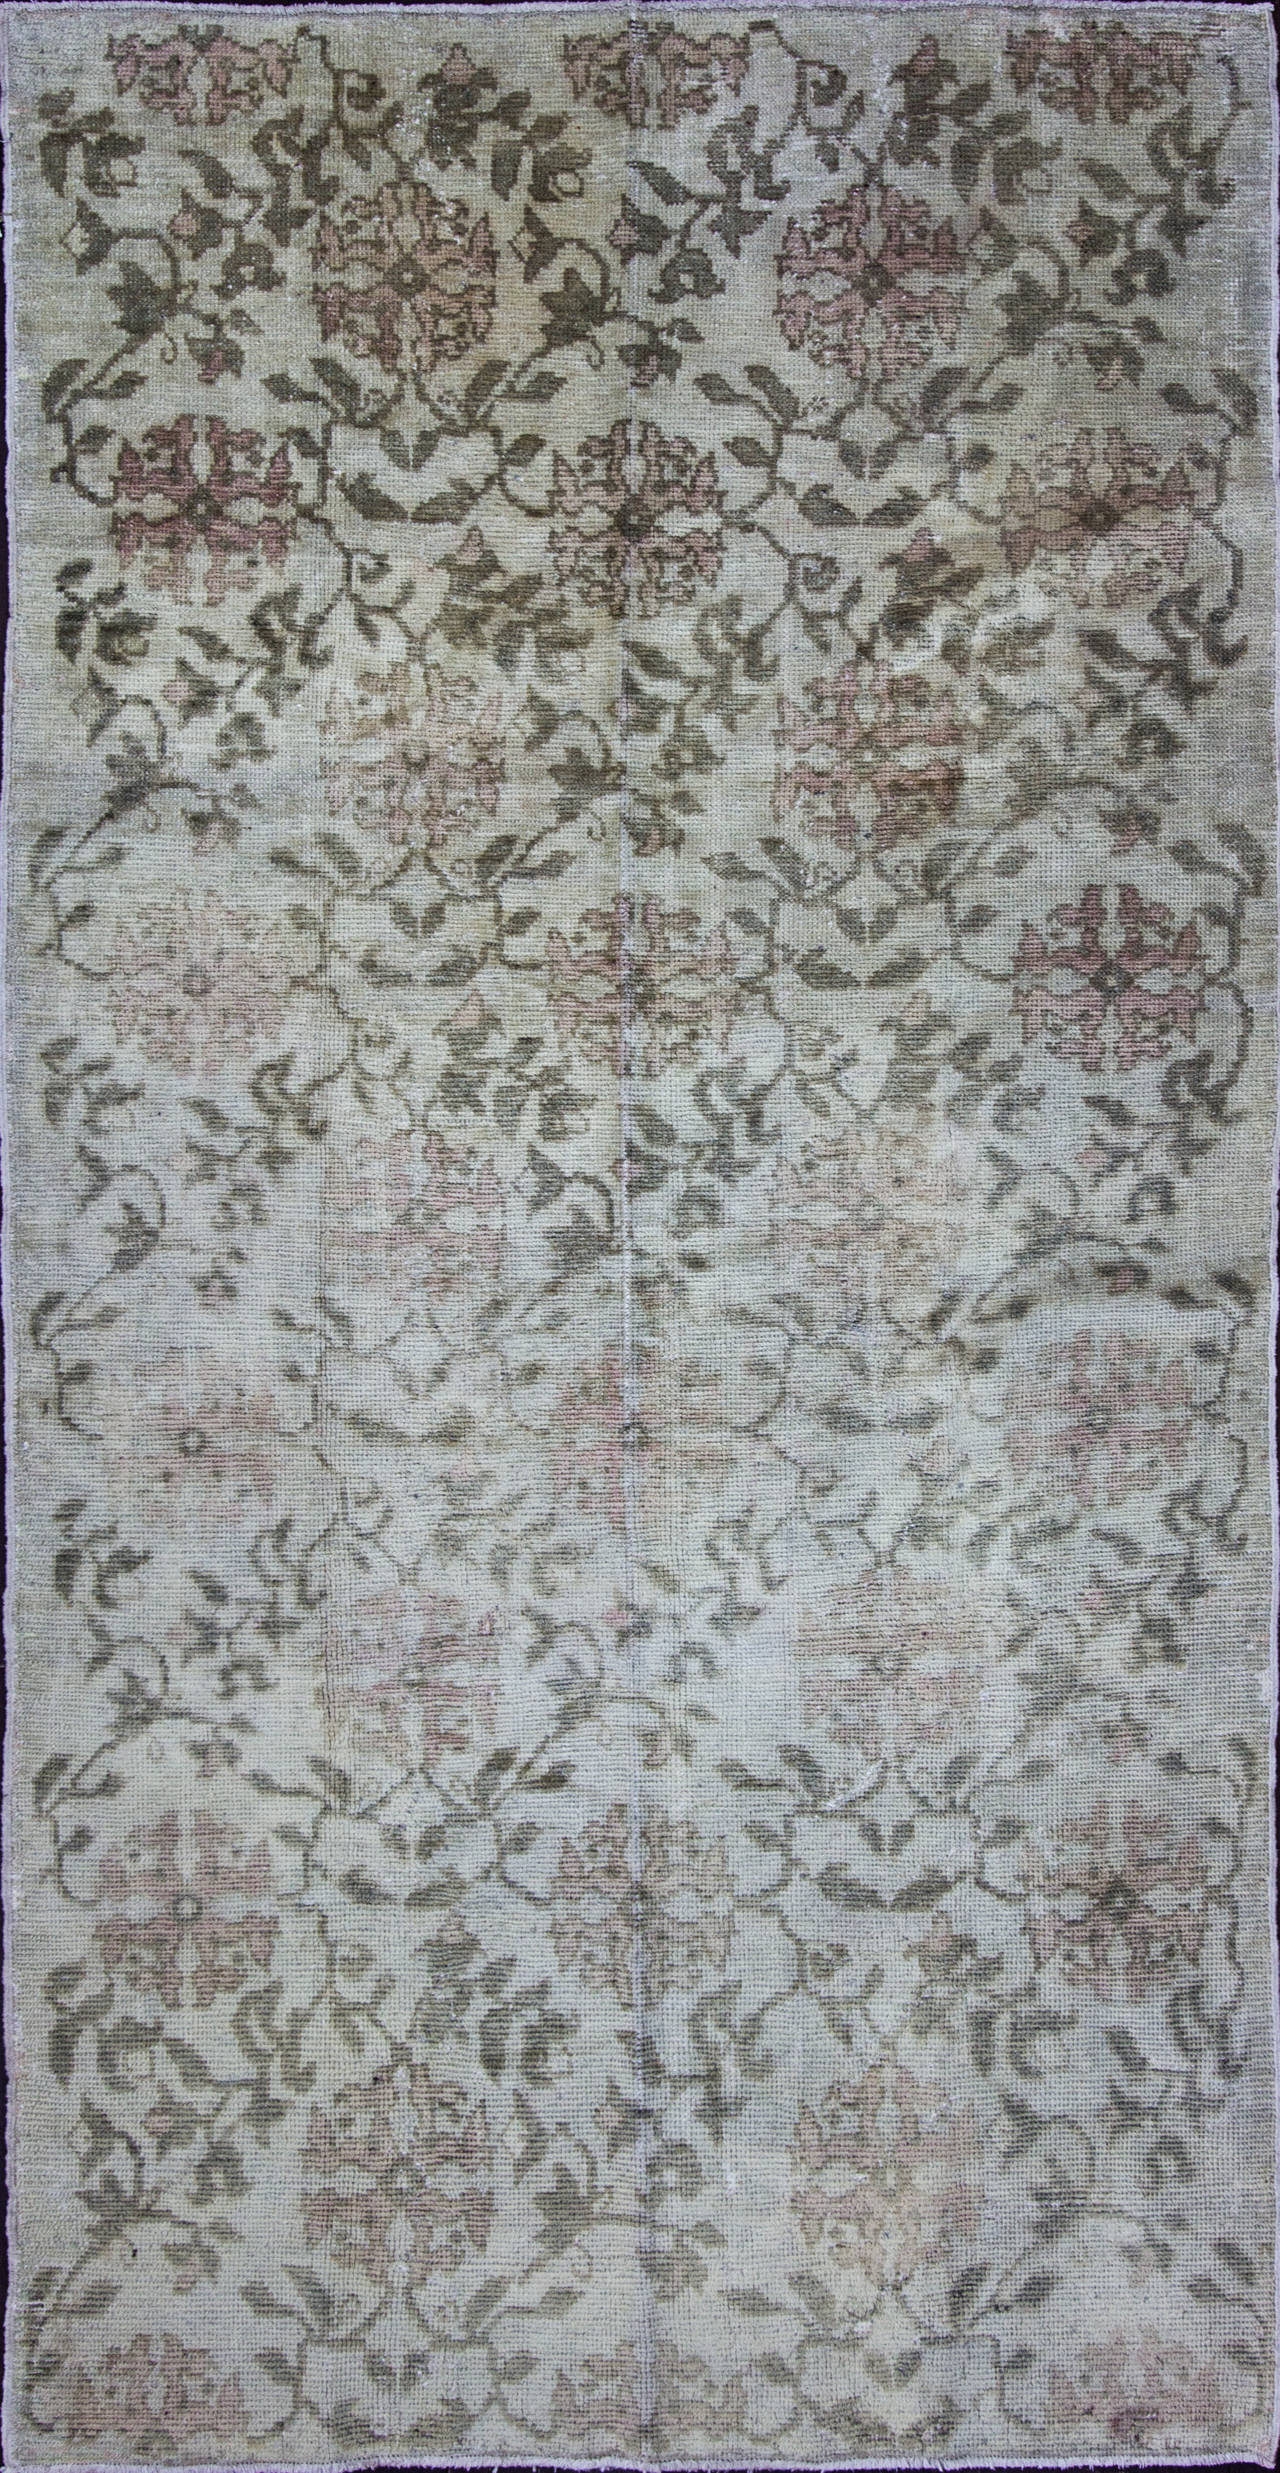 Ushak-Teppiche werden seit dem 15. Jahrhundert aus hervorragender Wolle und natürlichen Farbstoffen hergestellt. Im Gegensatz zu anderen türkischen Teppichen sind die Uschak-Teppiche von persischen Teppichen beeinflusst und werden mit